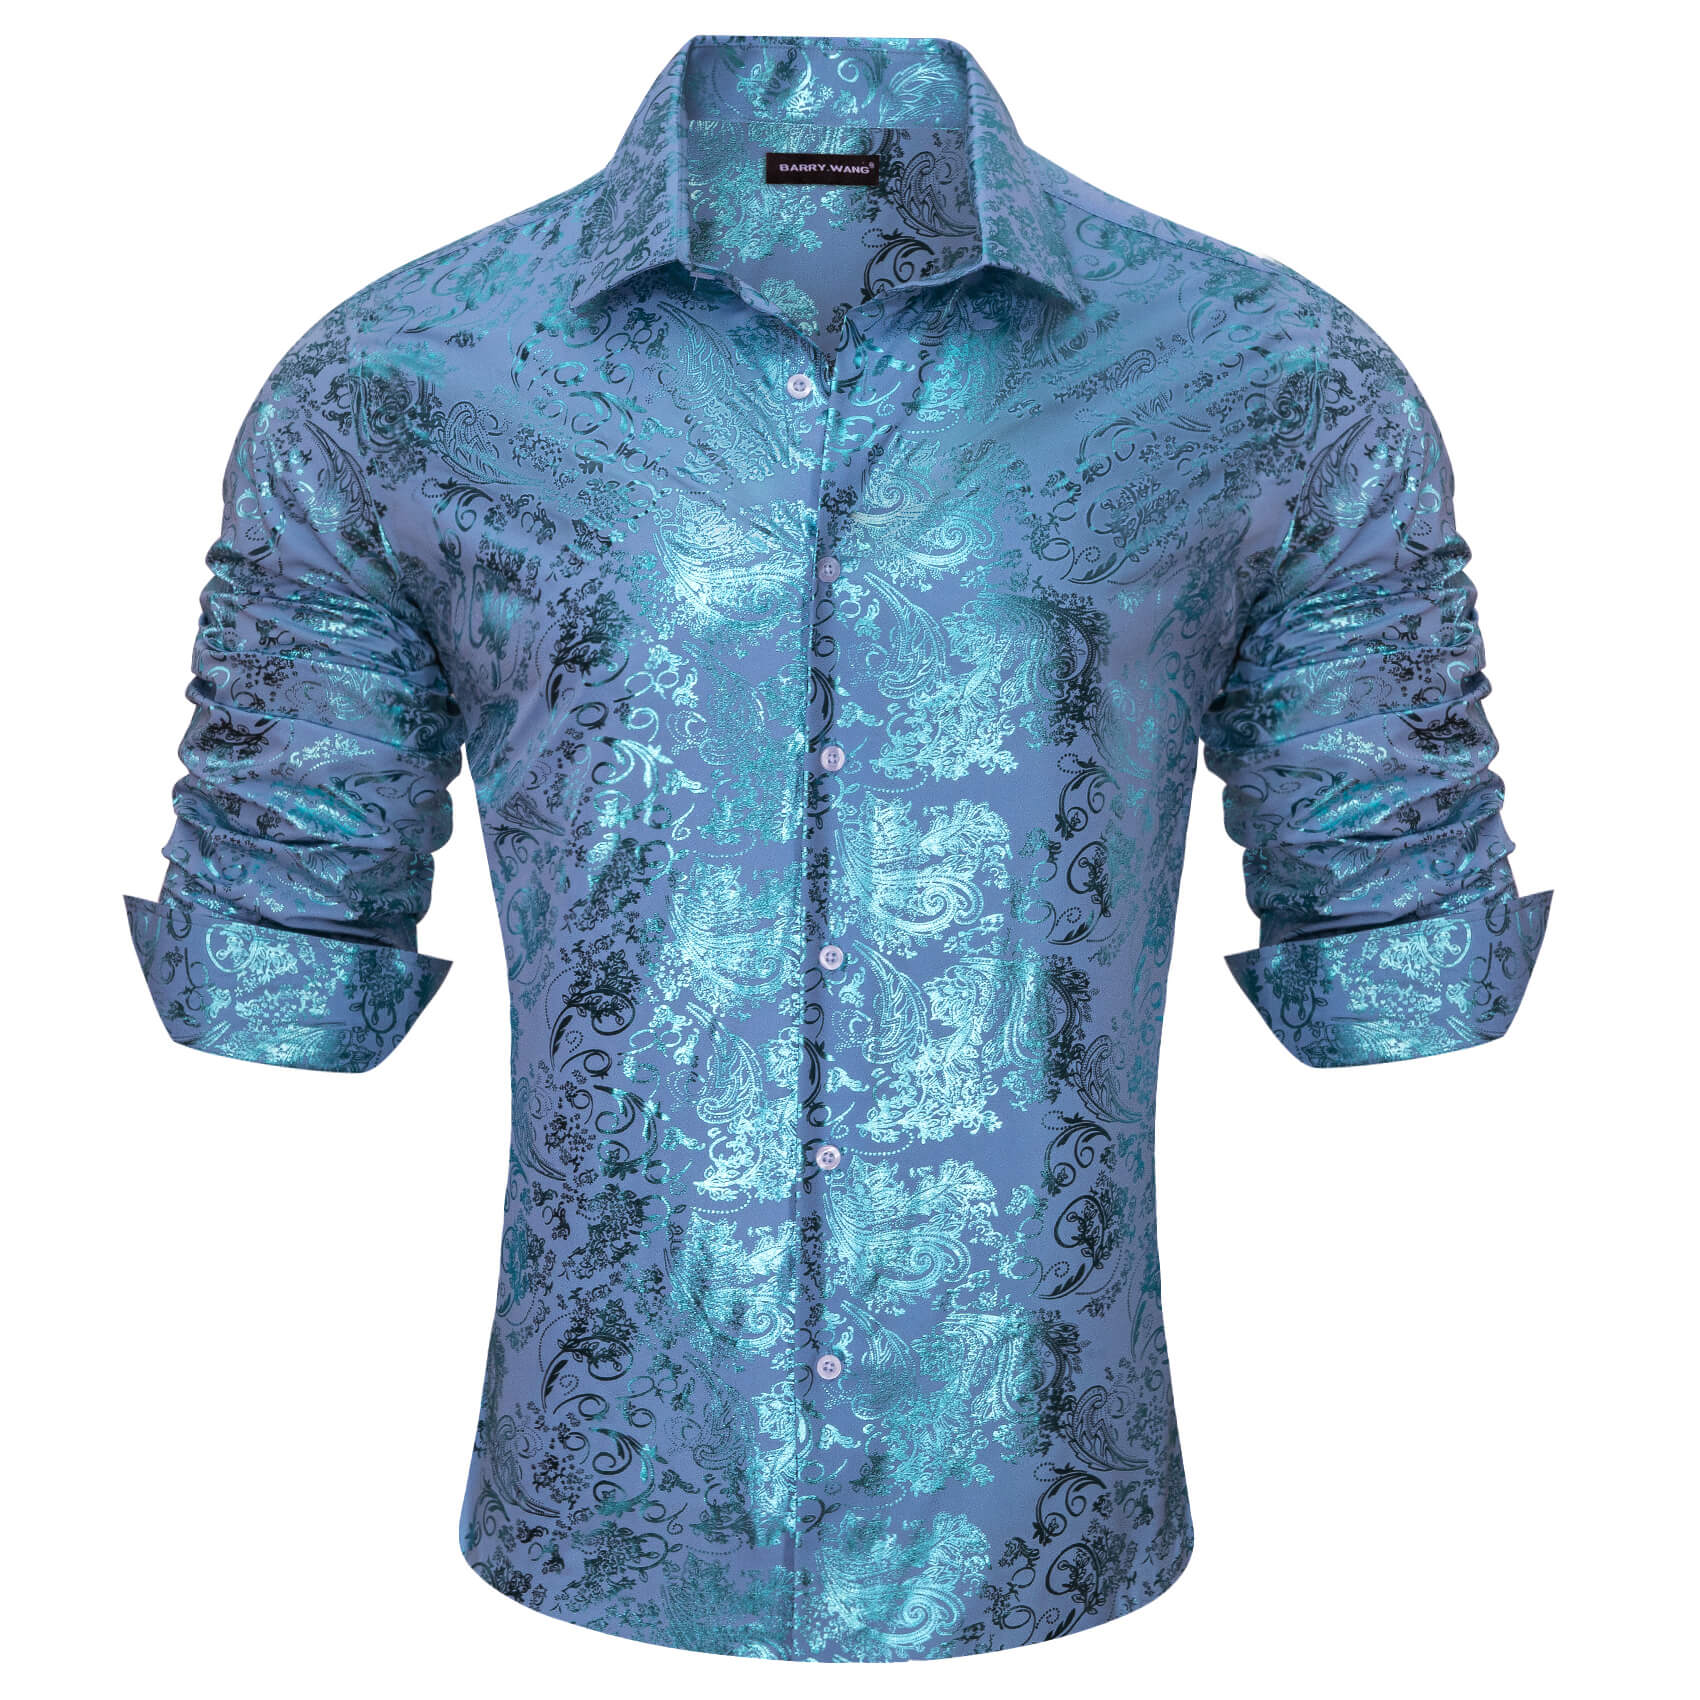 Barry.wang Men's Shirt Sky Blue Bronzing Floral Silk Long Sleeve Shirt